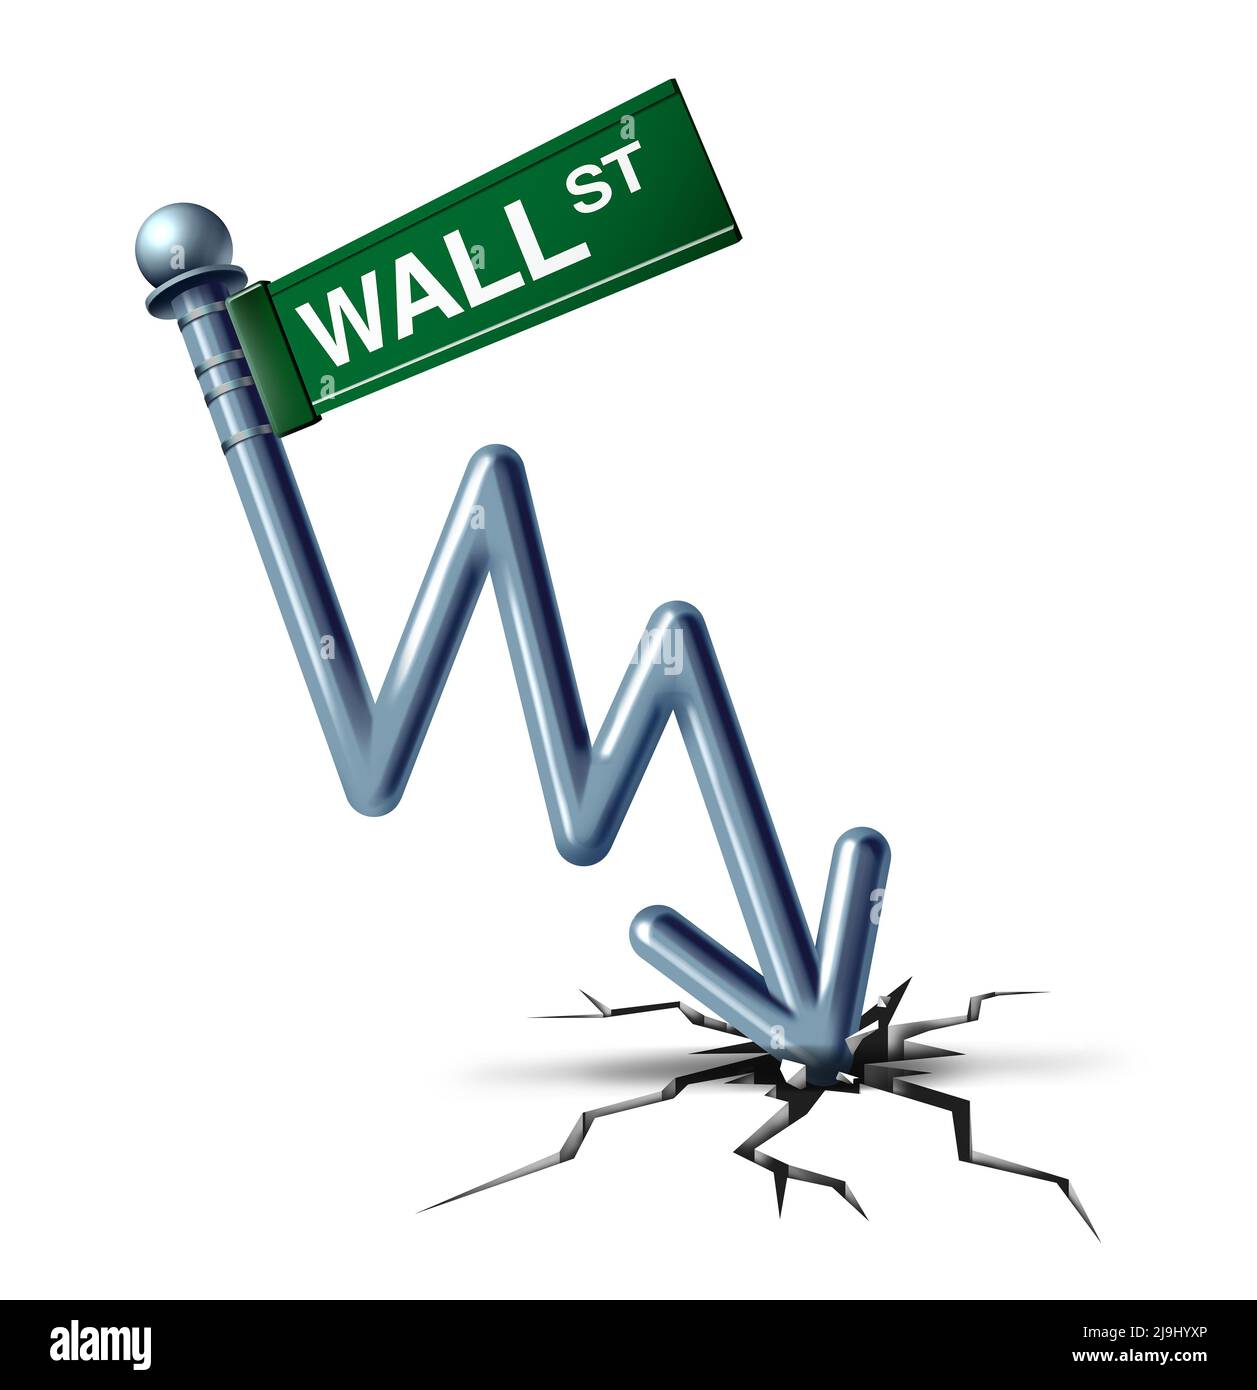 Wall Street crise et effondrement économique ou catastrophe financière et problème de crédit d'affaires symbole comme un concept de déclin du marché boursier. Banque D'Images